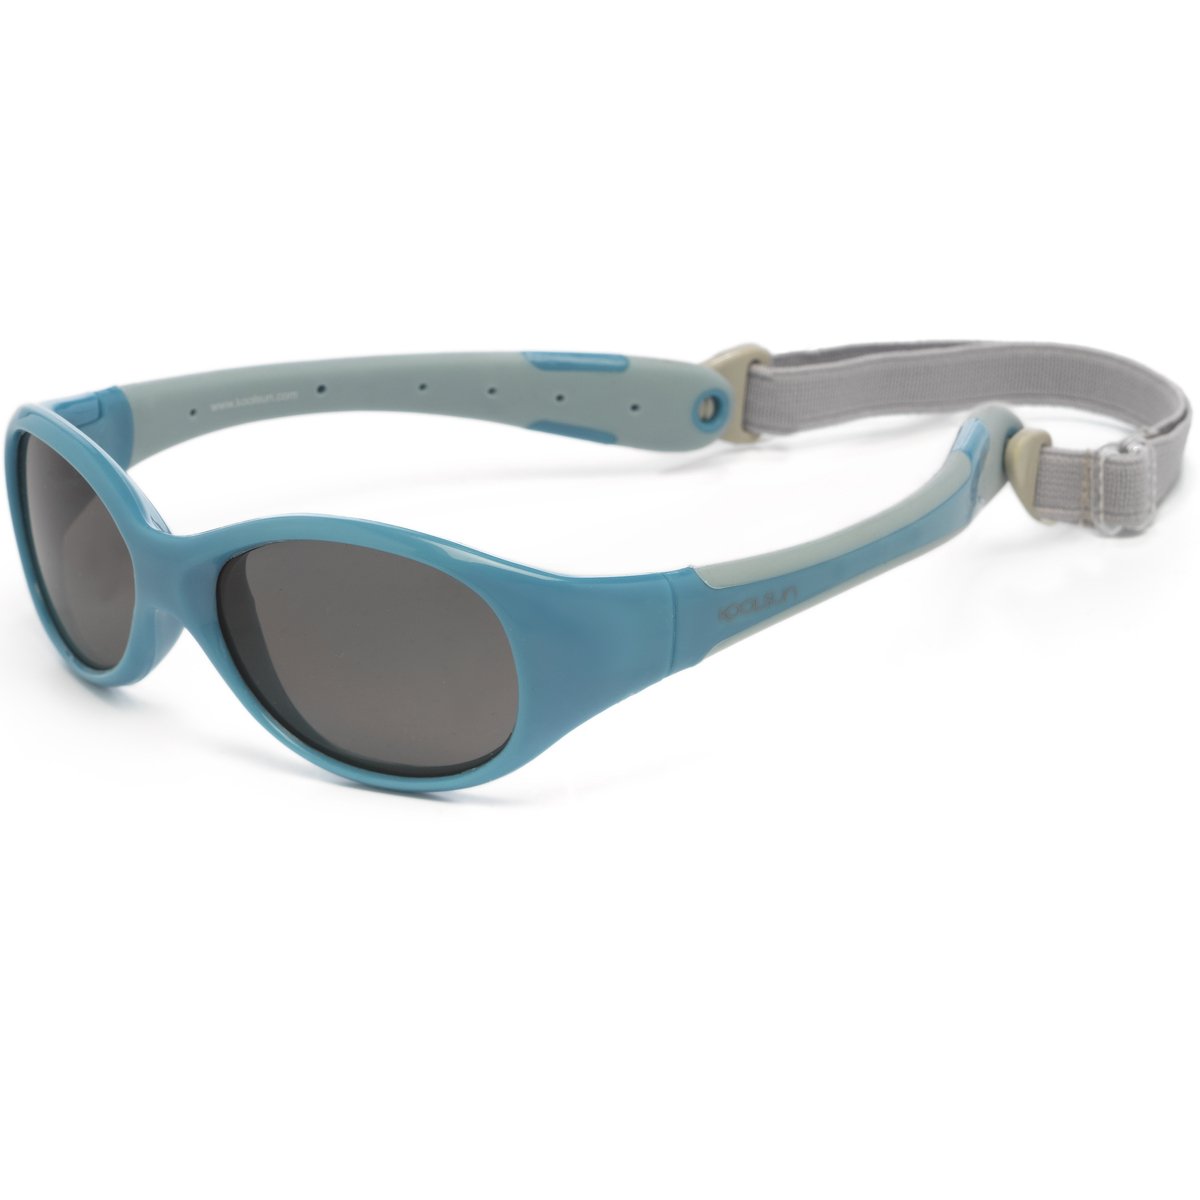 KOOLSUN - Flex - baby zonnebril - Cendre Blue Grey - 0-3 jaar - UV400 Categorie 3